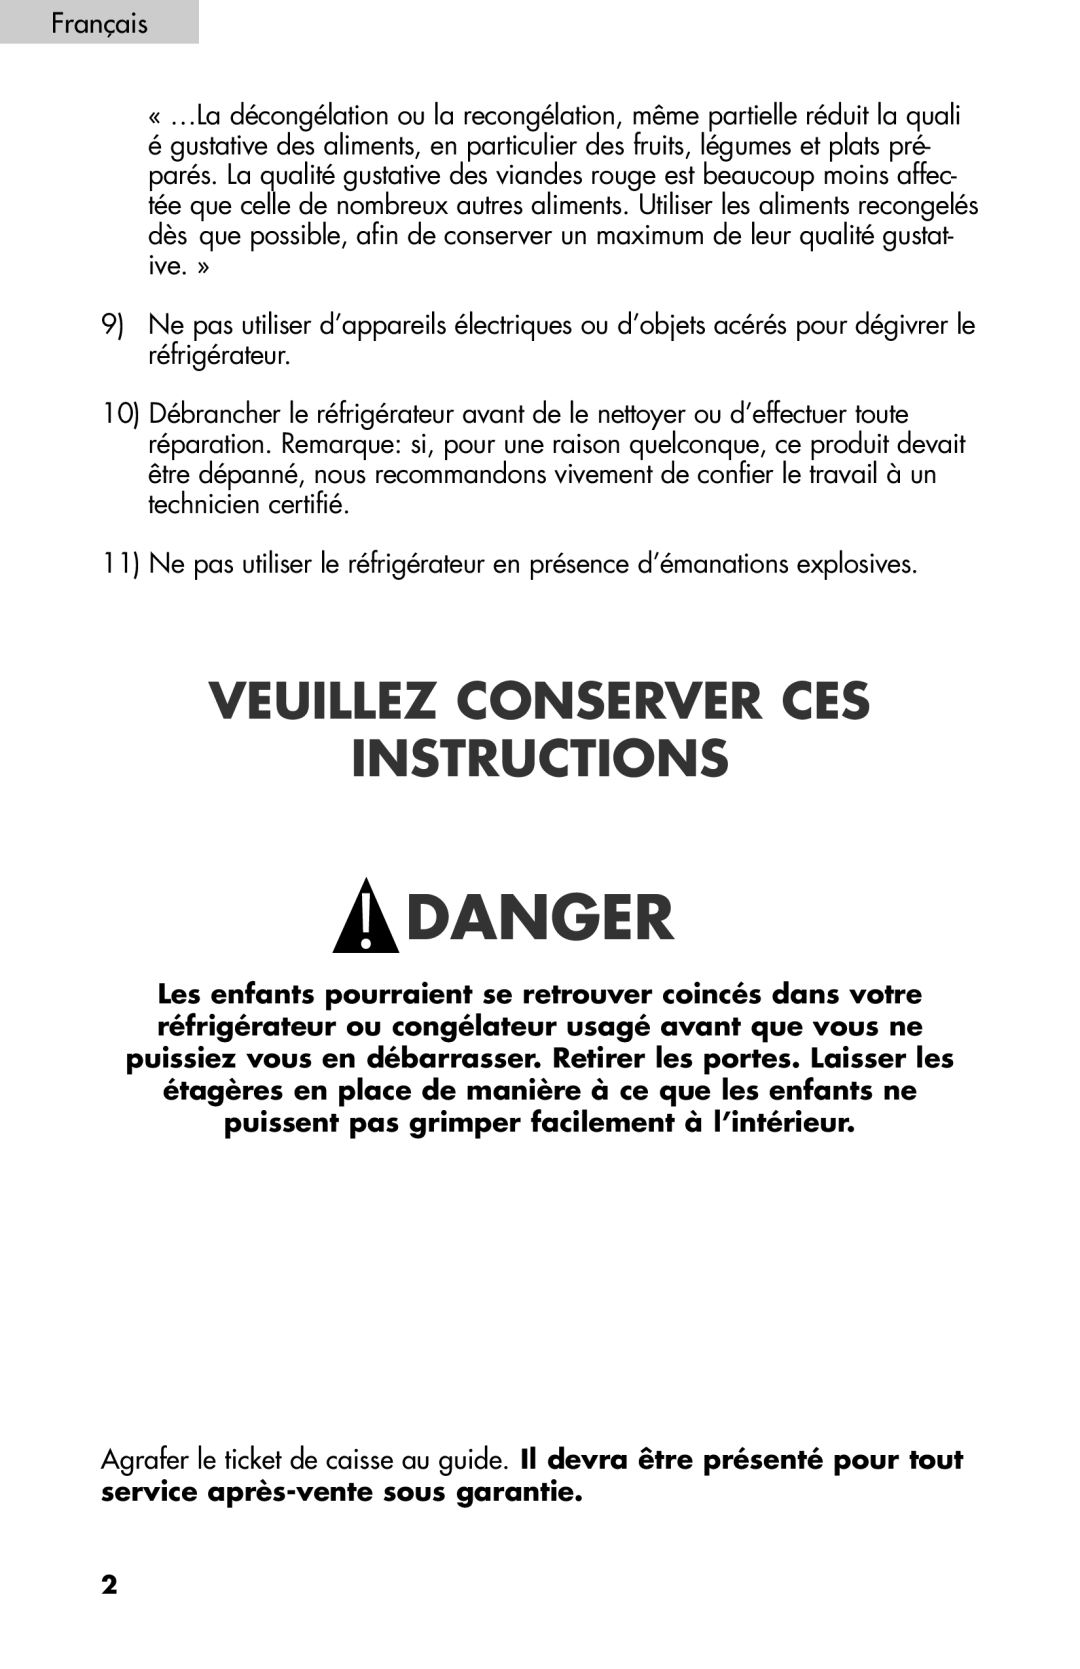 Igloo FR834B, FR832 user manual Veuillez Conserver Ces Instructions, Danger 